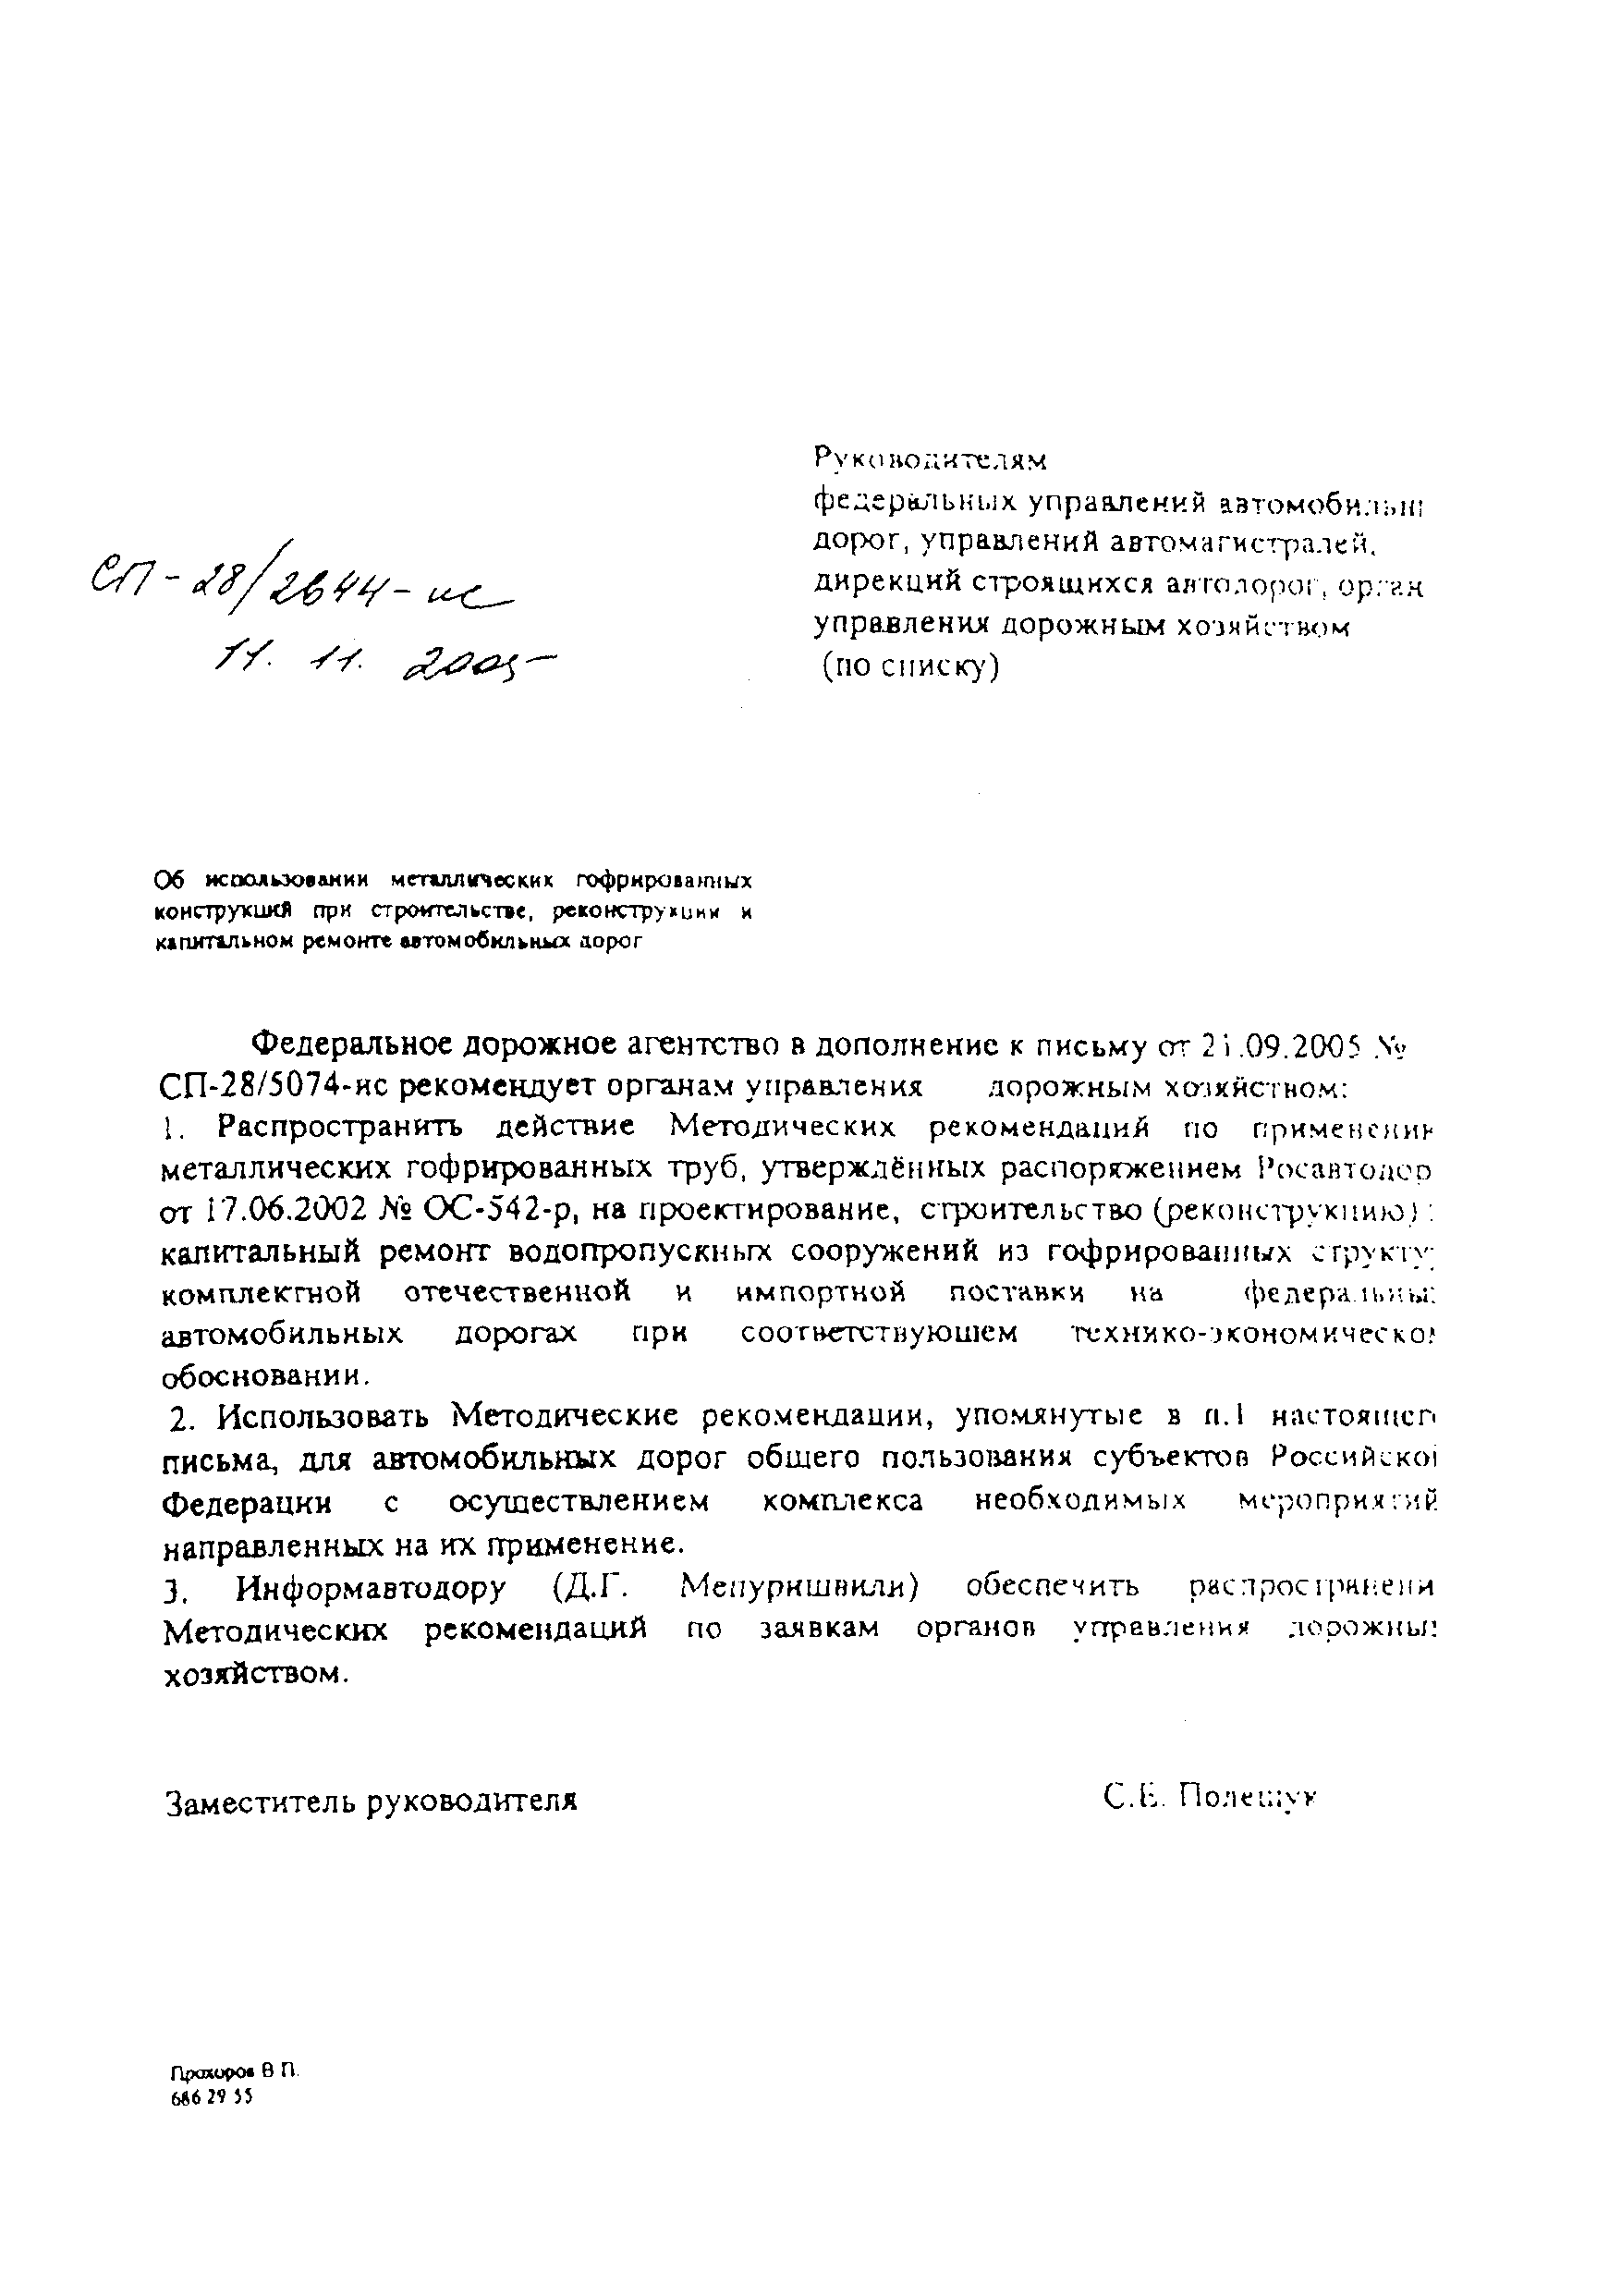 Письмо СП-28/2644-ИС